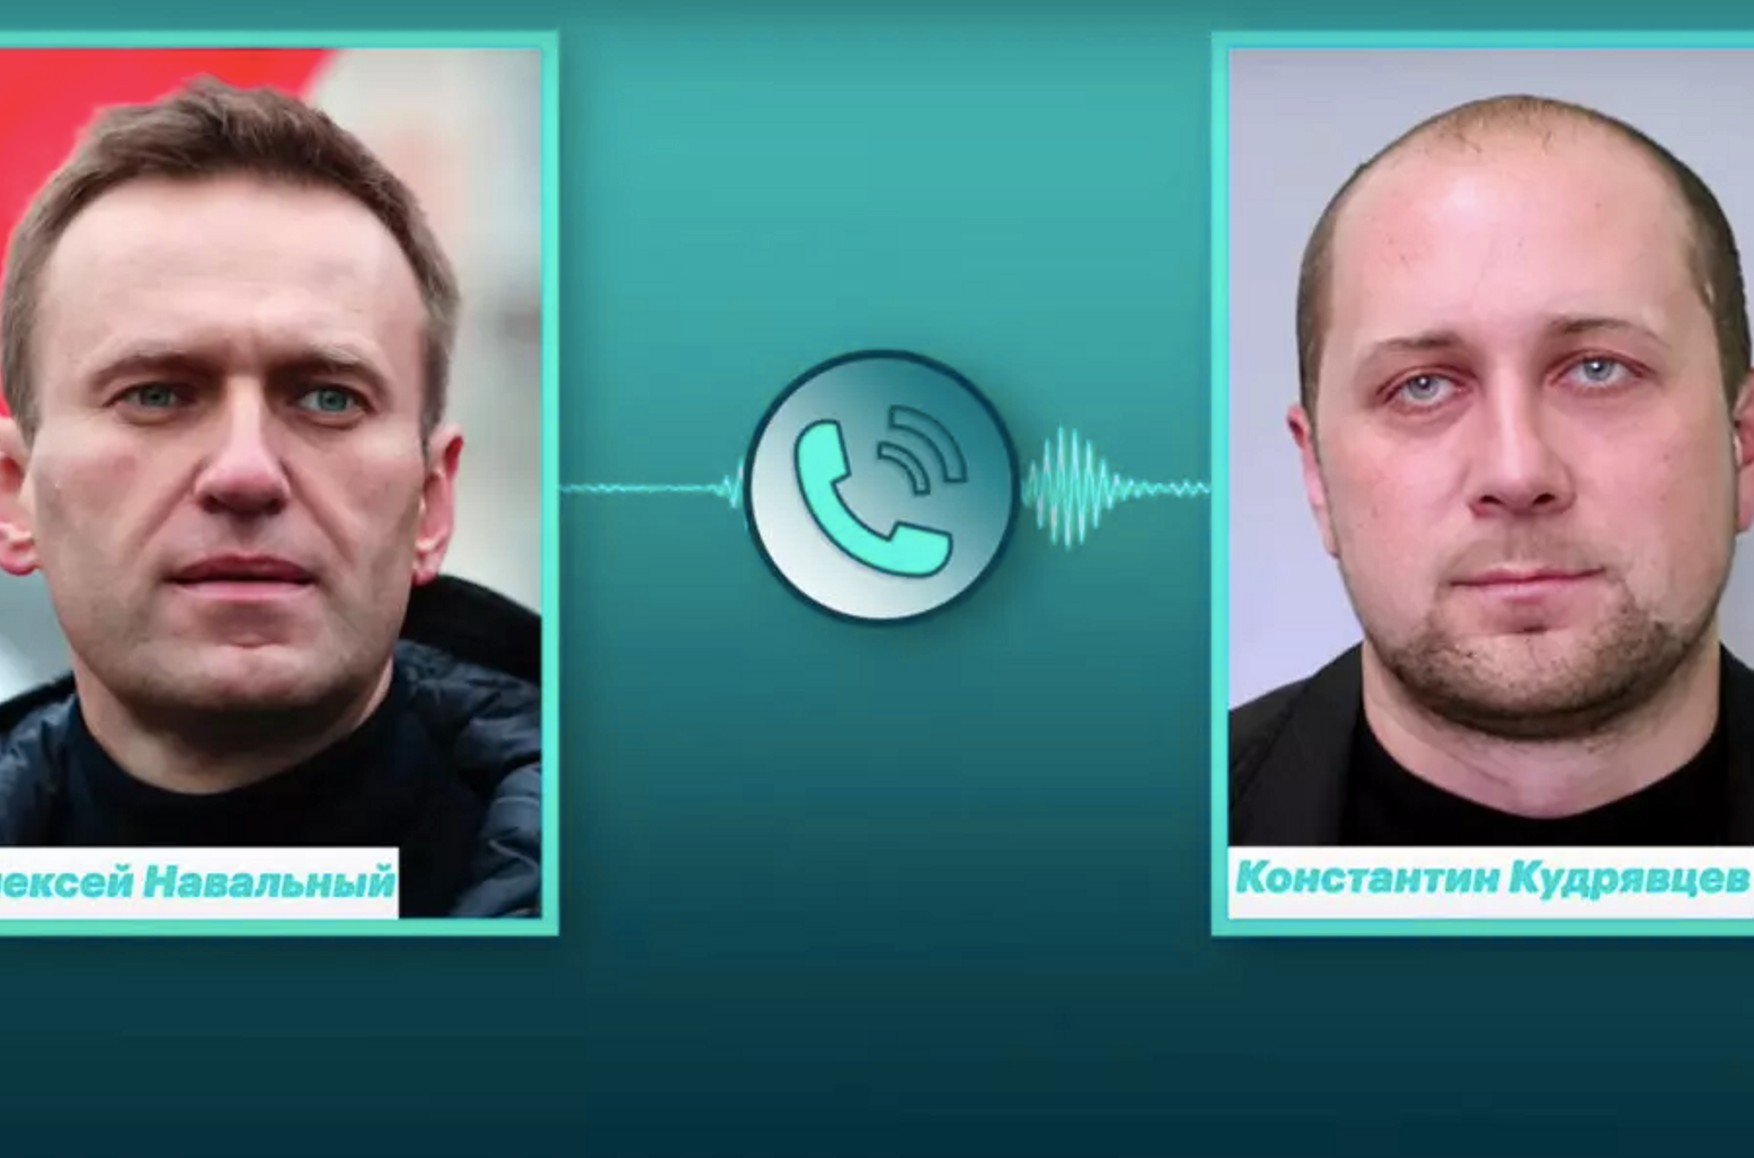 Общение с душой навального. Кудрявцев отравитель Навального.